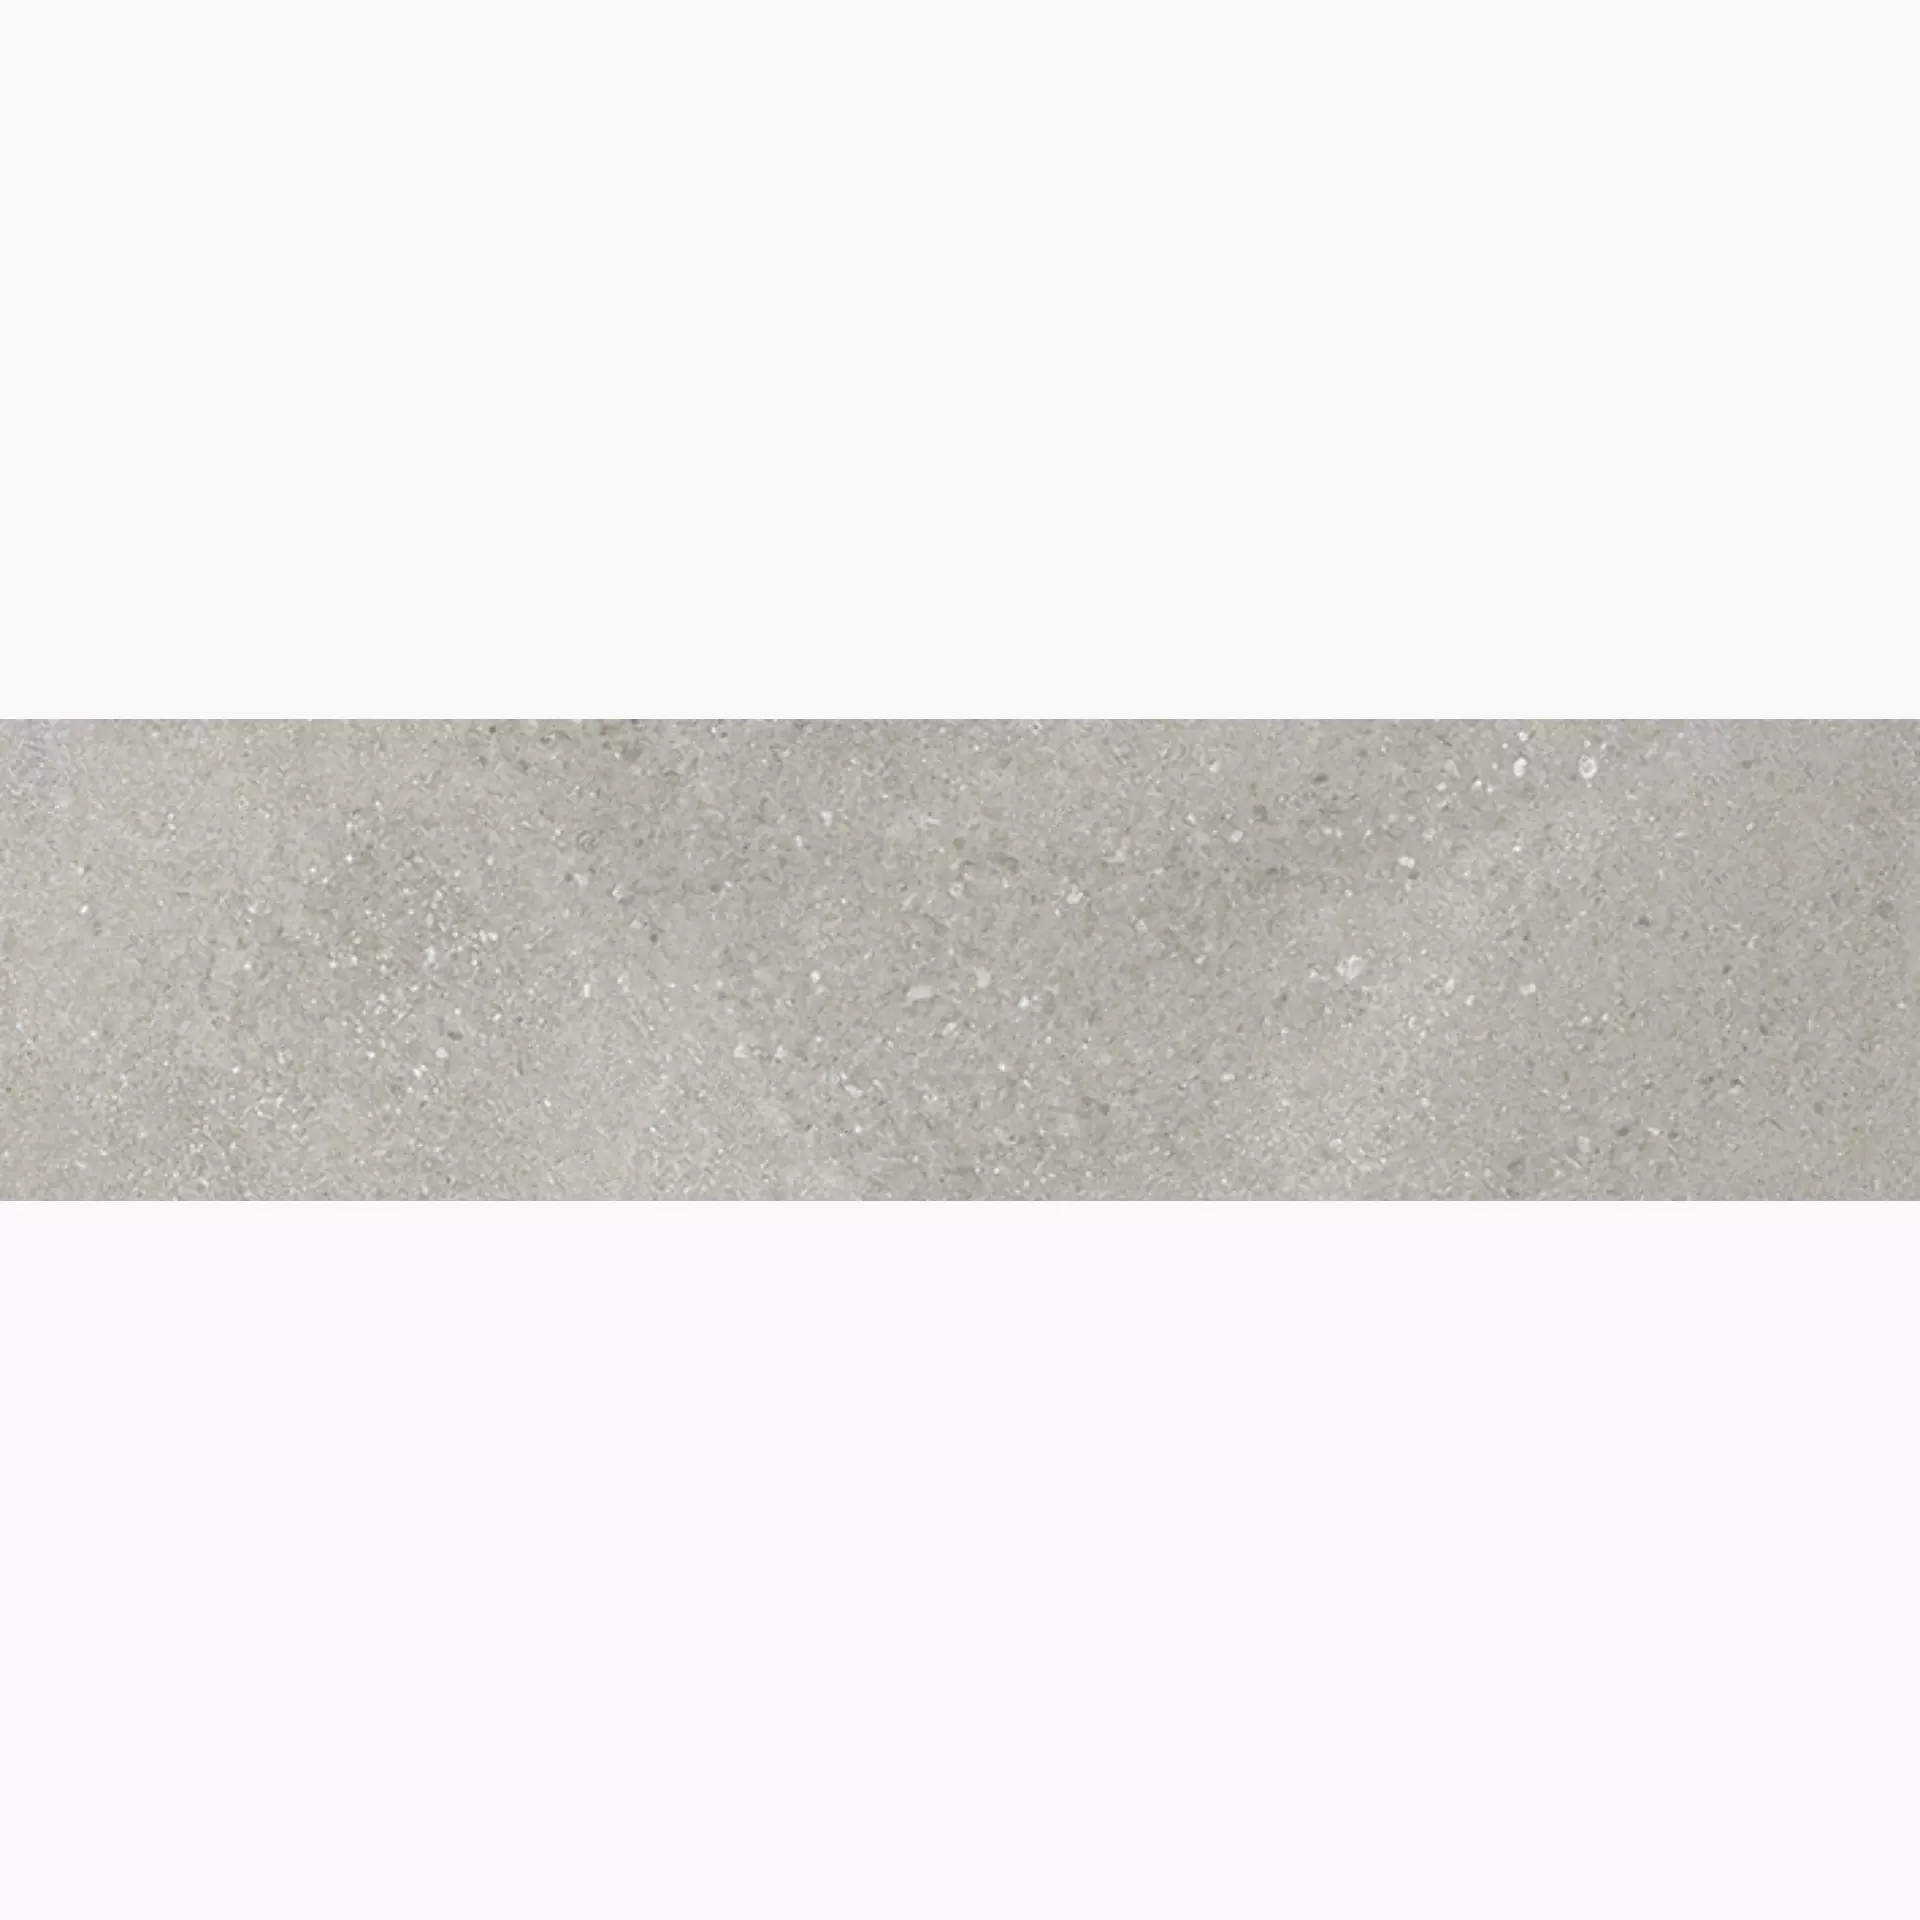 Wandfliese,Bodenfliese Villeroy & Boch Hudson Ash Grey Brushed Ash Grey 2419-SD5B gebuerstet 15x60cm rektifiziert 10mm